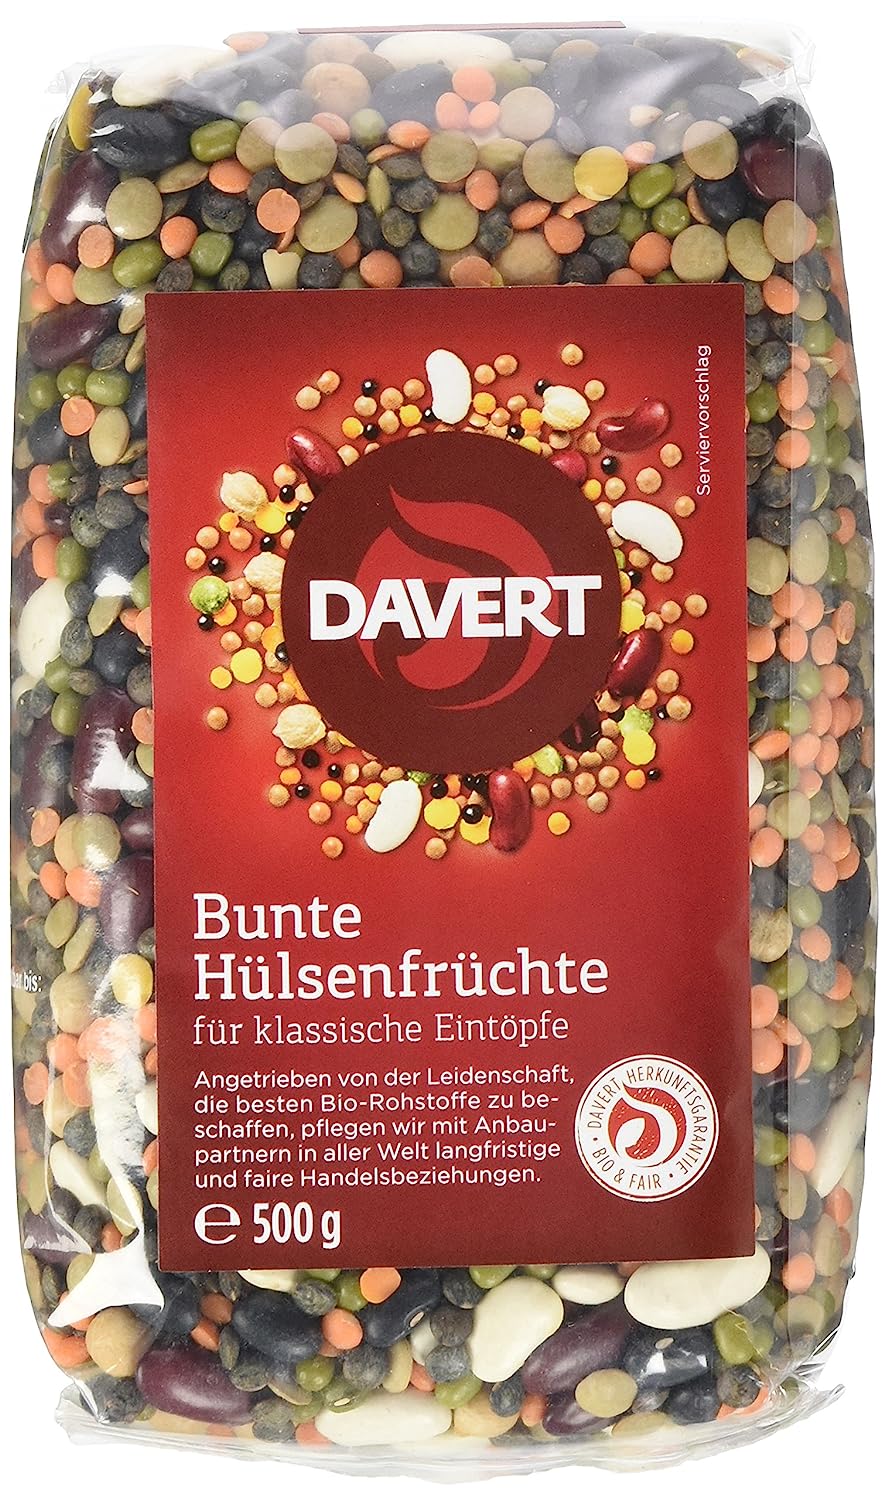 Hỗn hợp các loại đậu hữu cơ - Davert - 500g